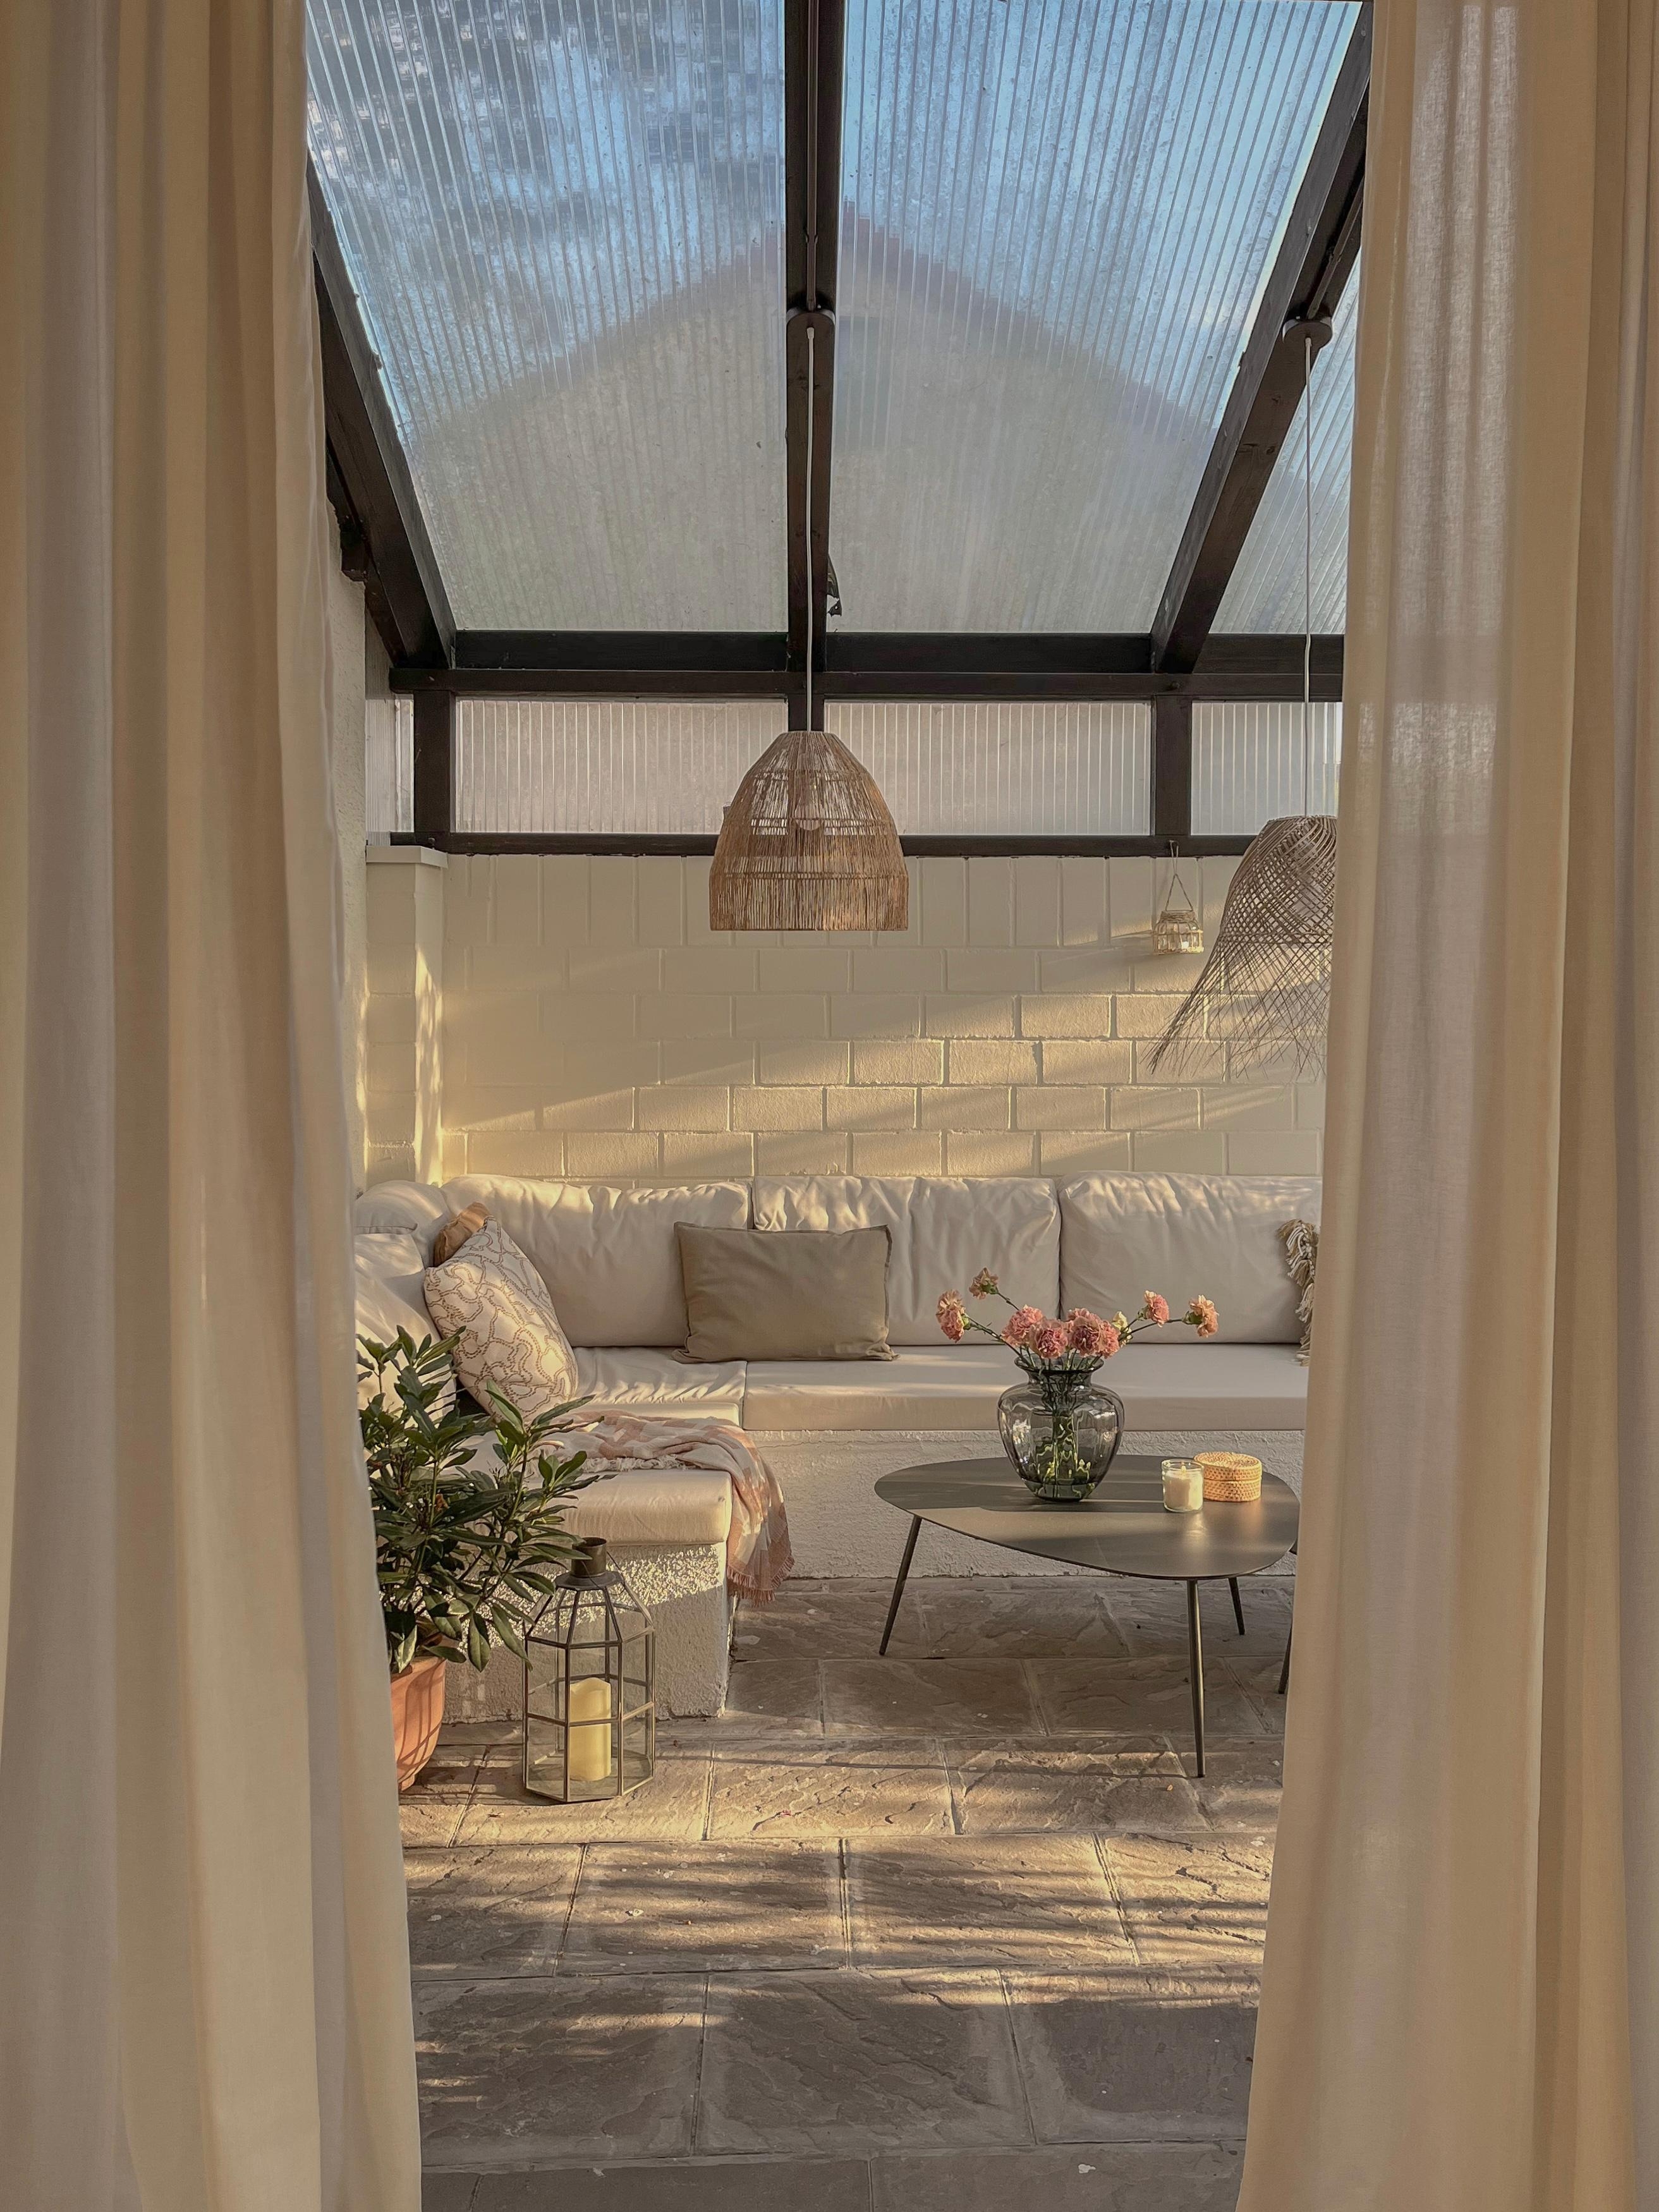 Wintergarten mit DIY Lounge aus Porenbeton ☀️ 🌸  #terrasse #gestaltung #outdoor #diy #lounge #couch #tisch #balkon #mediterran #deko #einrichtung #lampen #korblampe